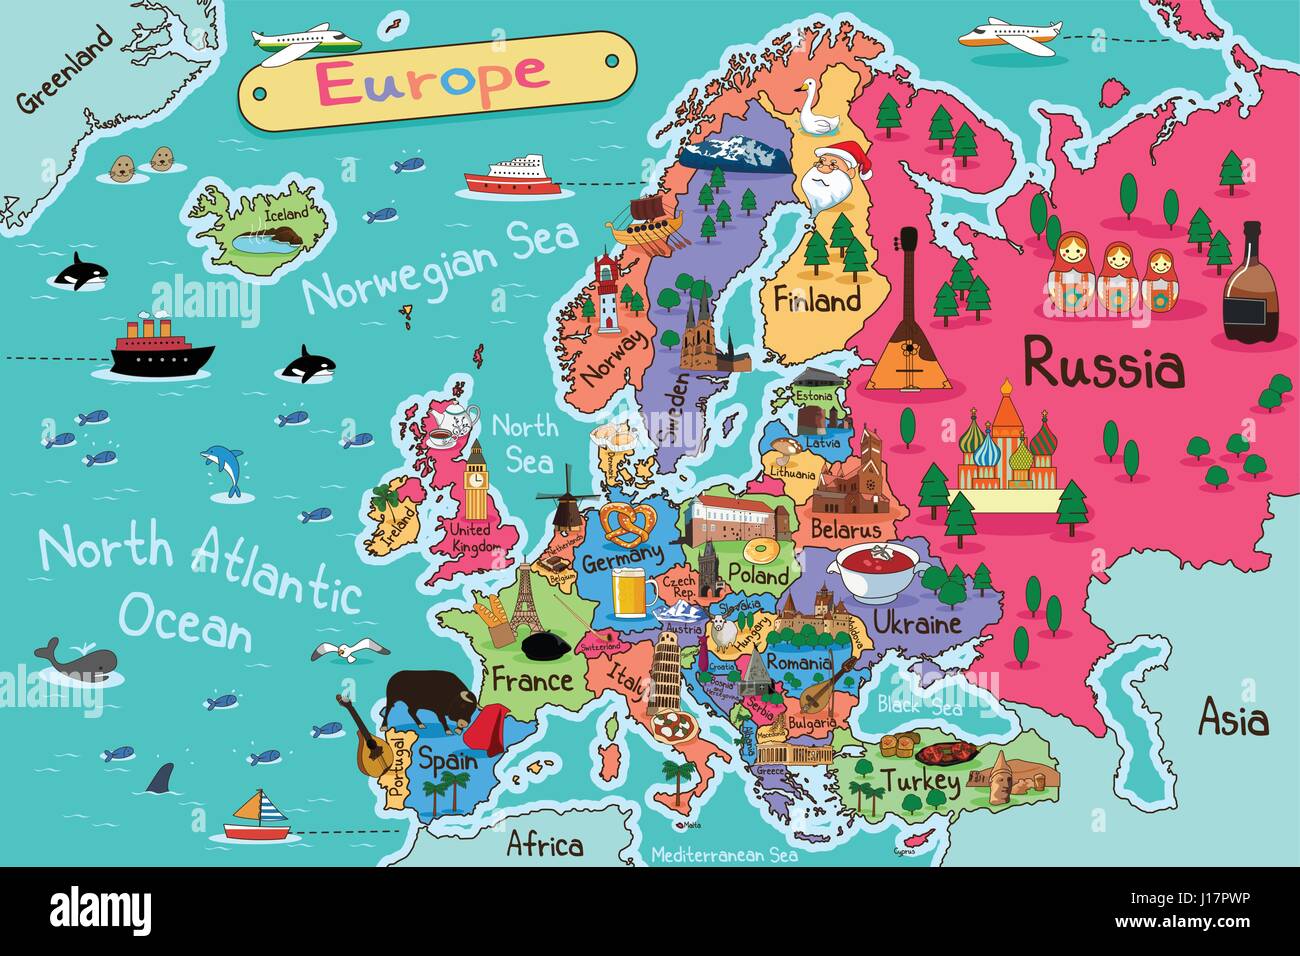 46.336 Ilustraciones de Mapa Europa - Getty Images